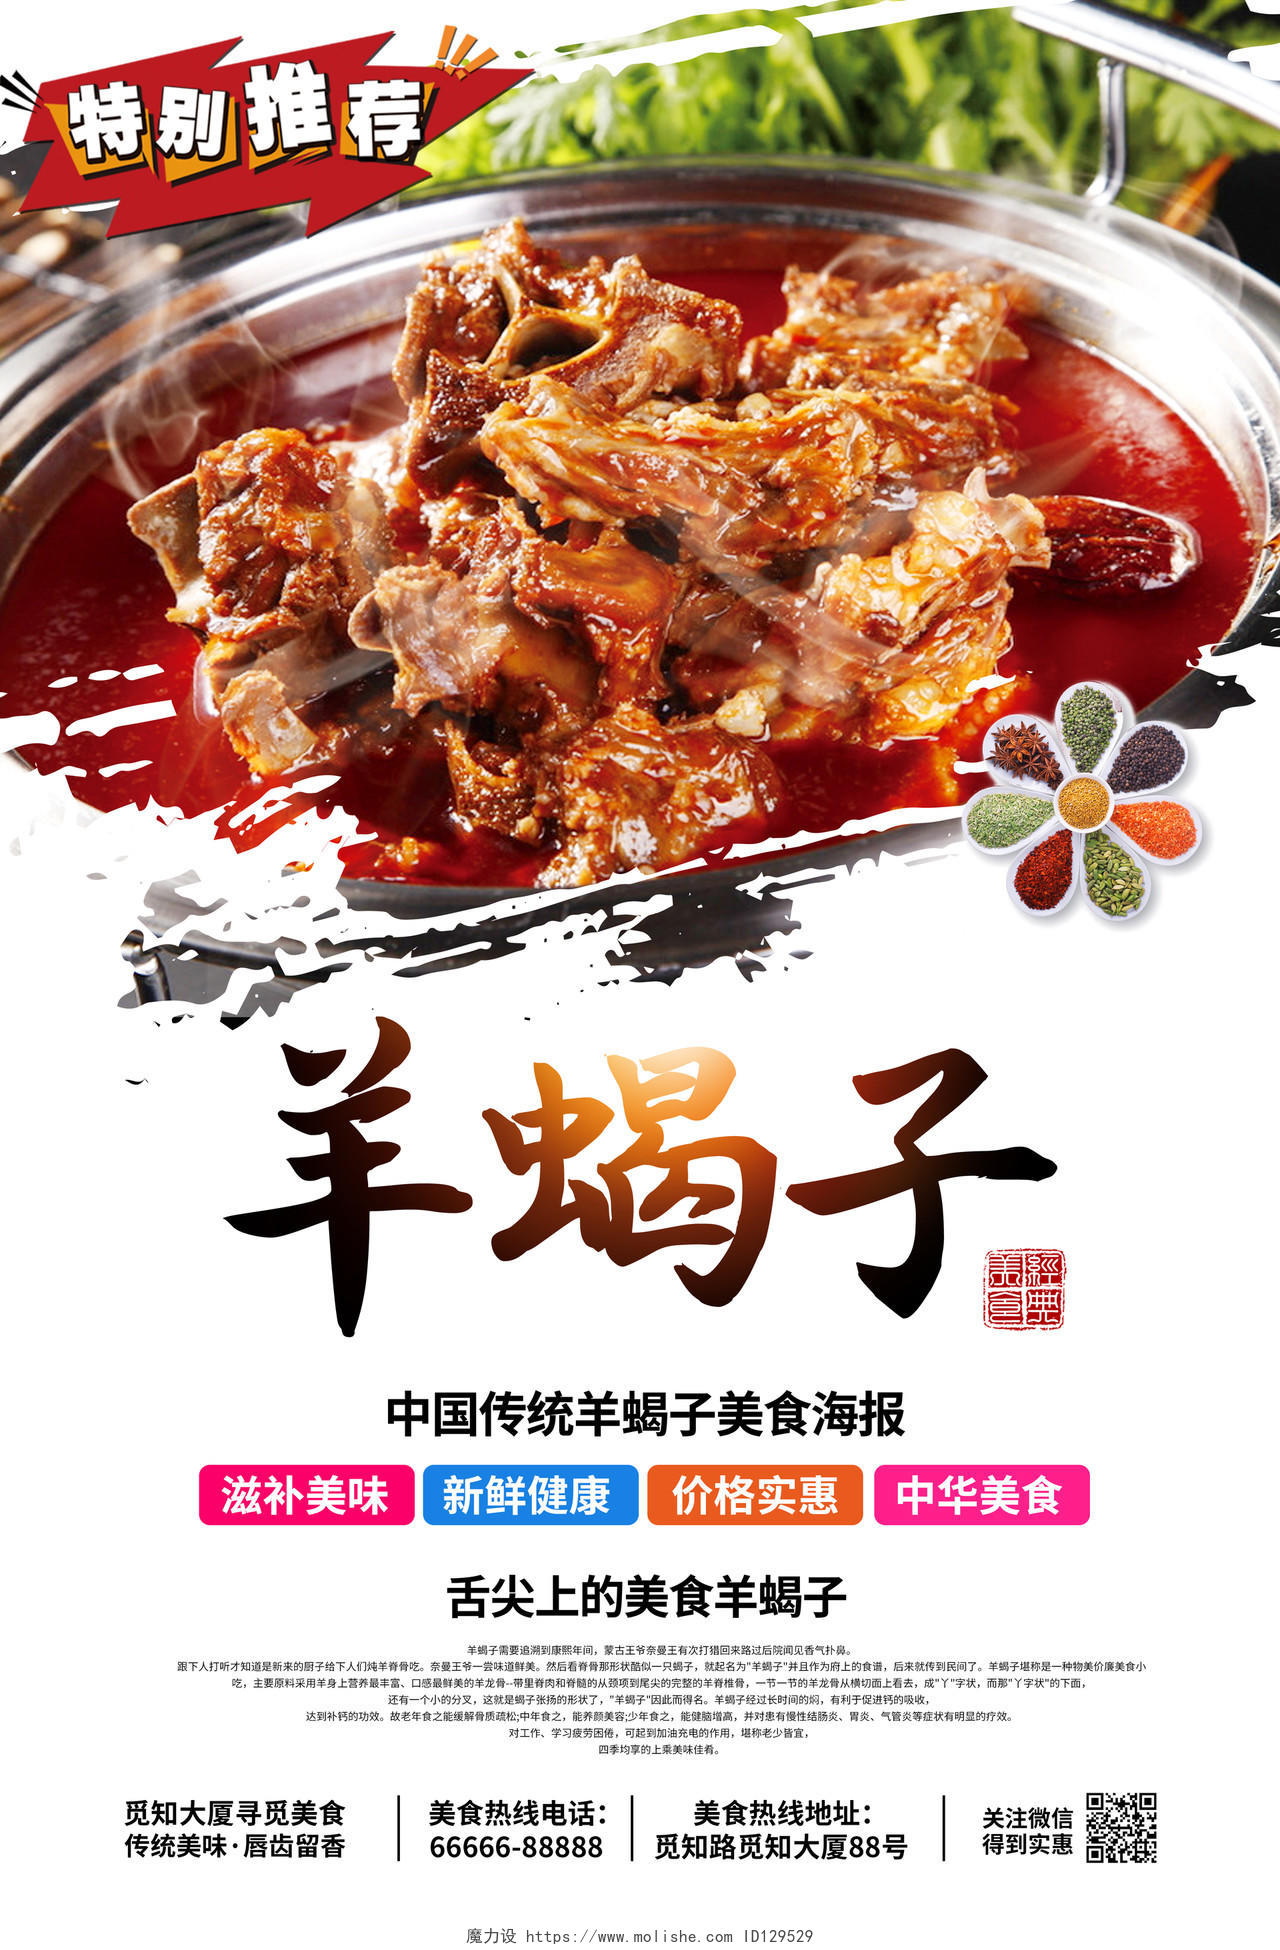 创意简约羊蝎子传统美味佳肴美食羊蝎子火锅推荐宣传海报